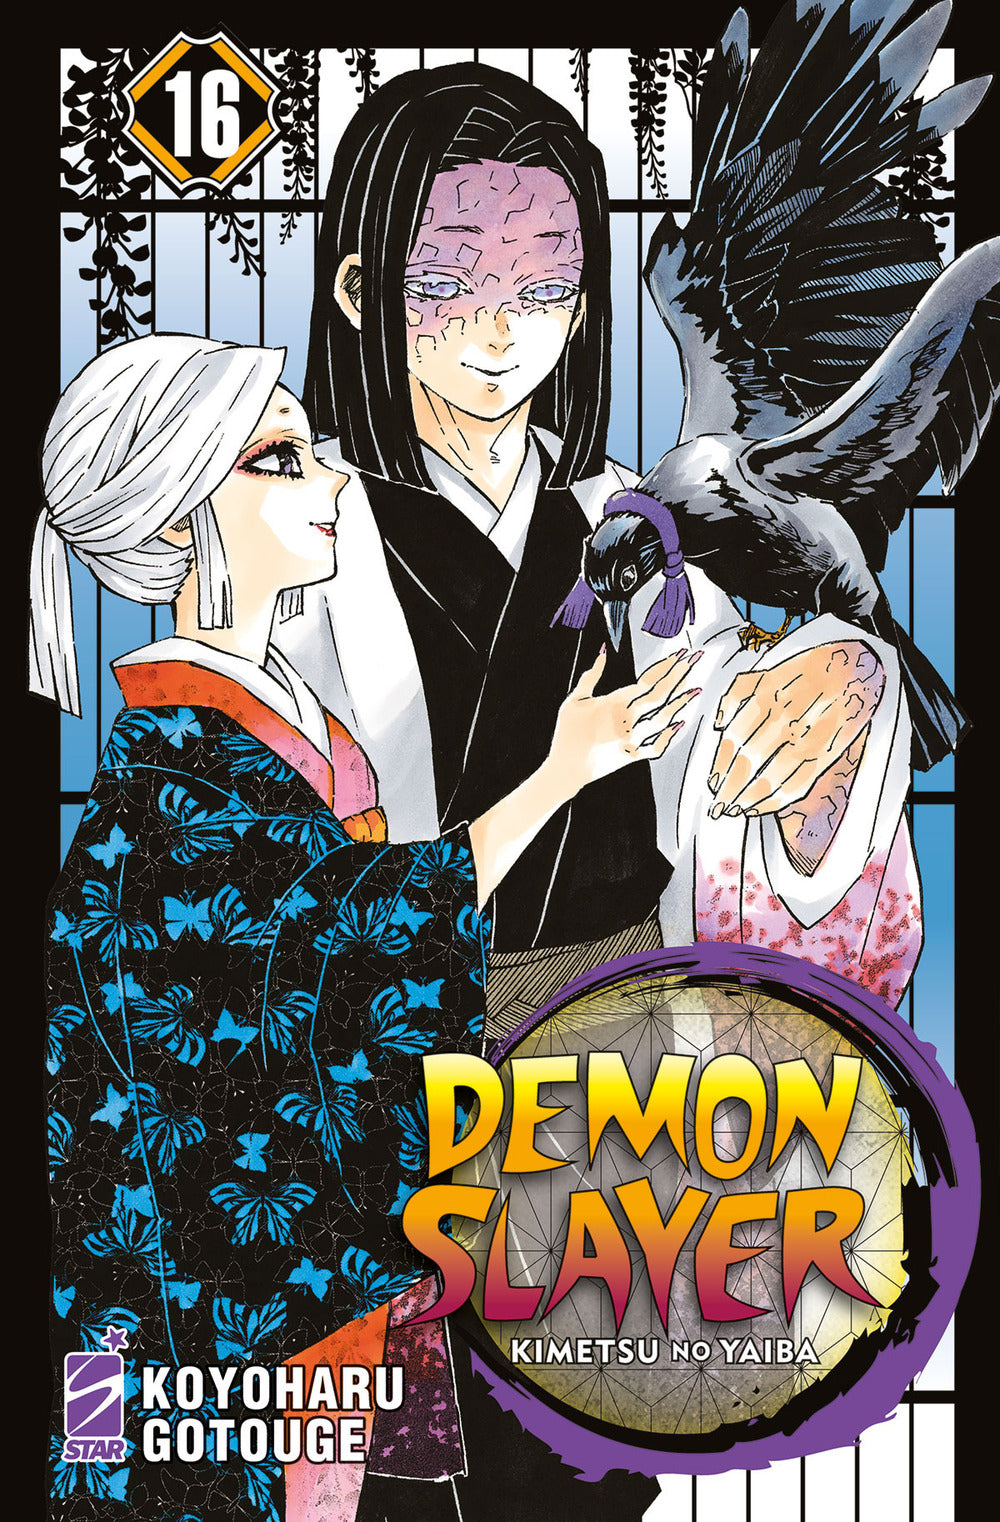 Demon slayer. Kimetsu no yaiba. Vol. 16.